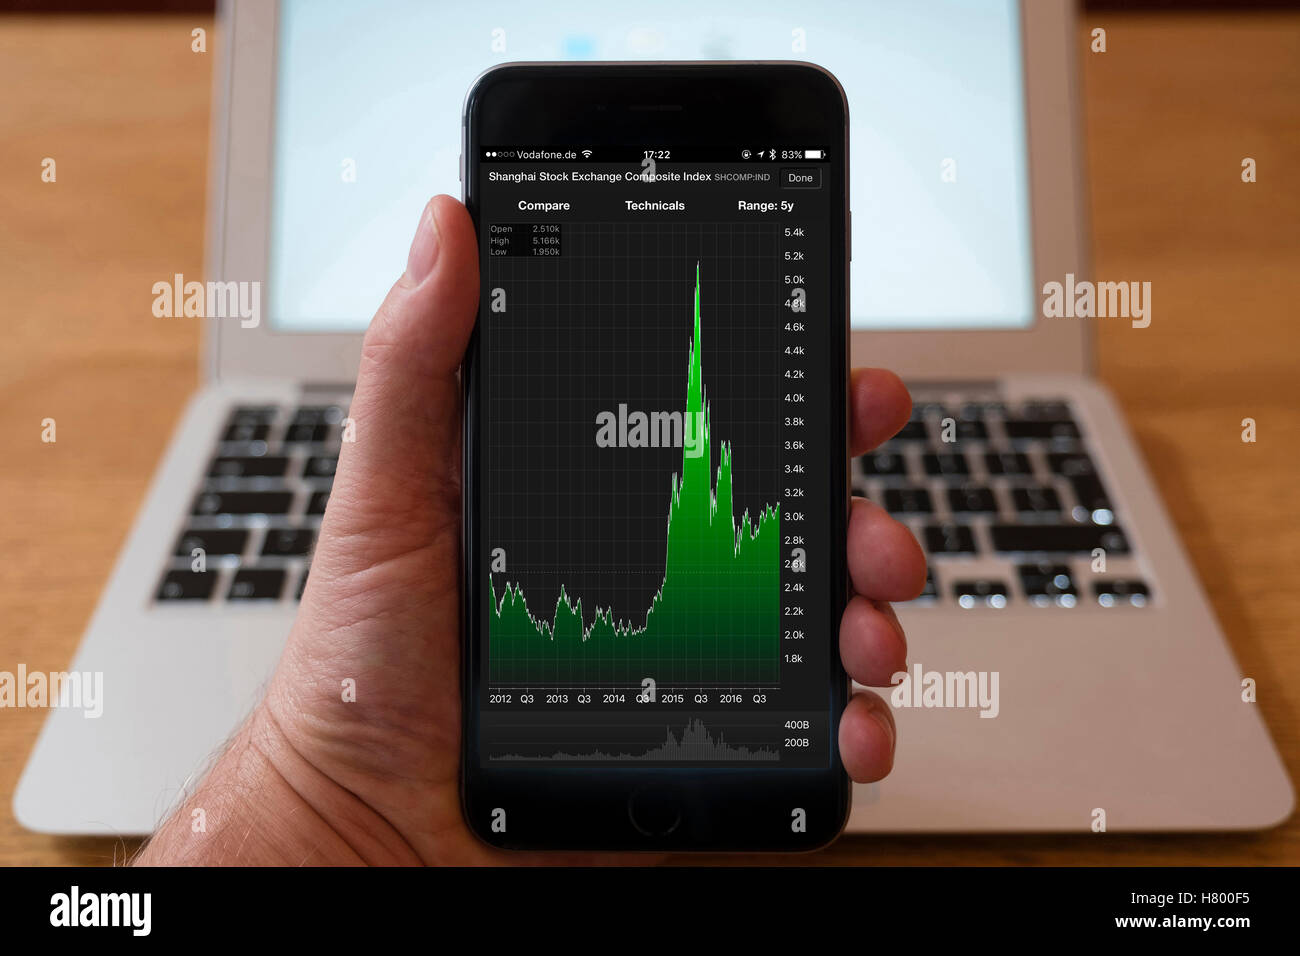 Utilizzo di iPhone smartphone per visualizzare il mercato azionario grafico delle prestazioni per Shanghai Stock Exchange indice composito, Foto Stock